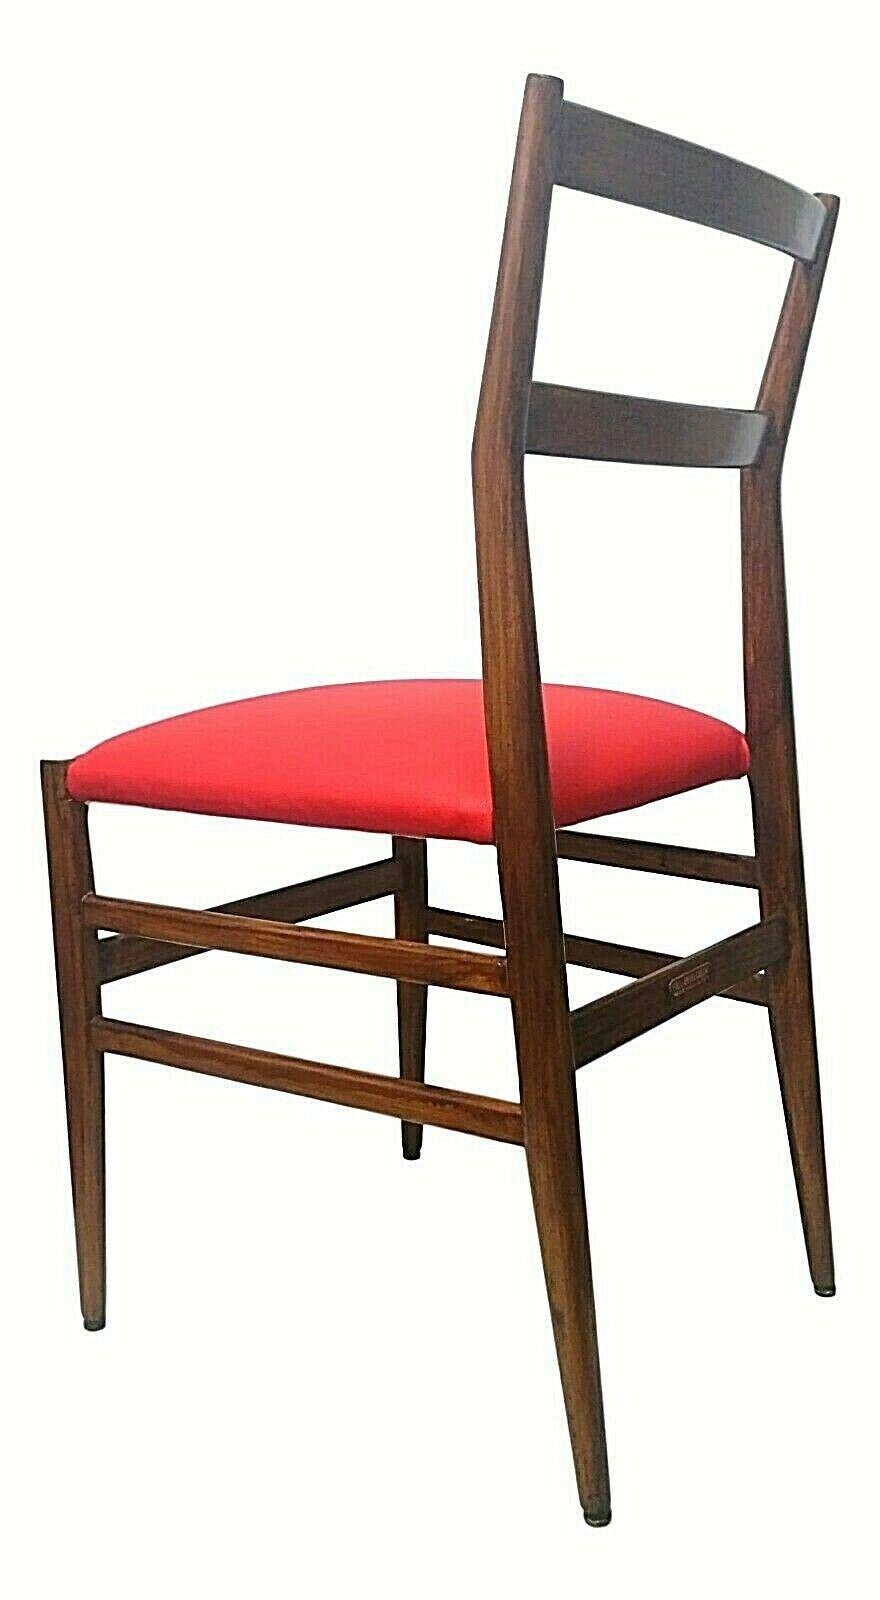 Splendid Cassina chair model 